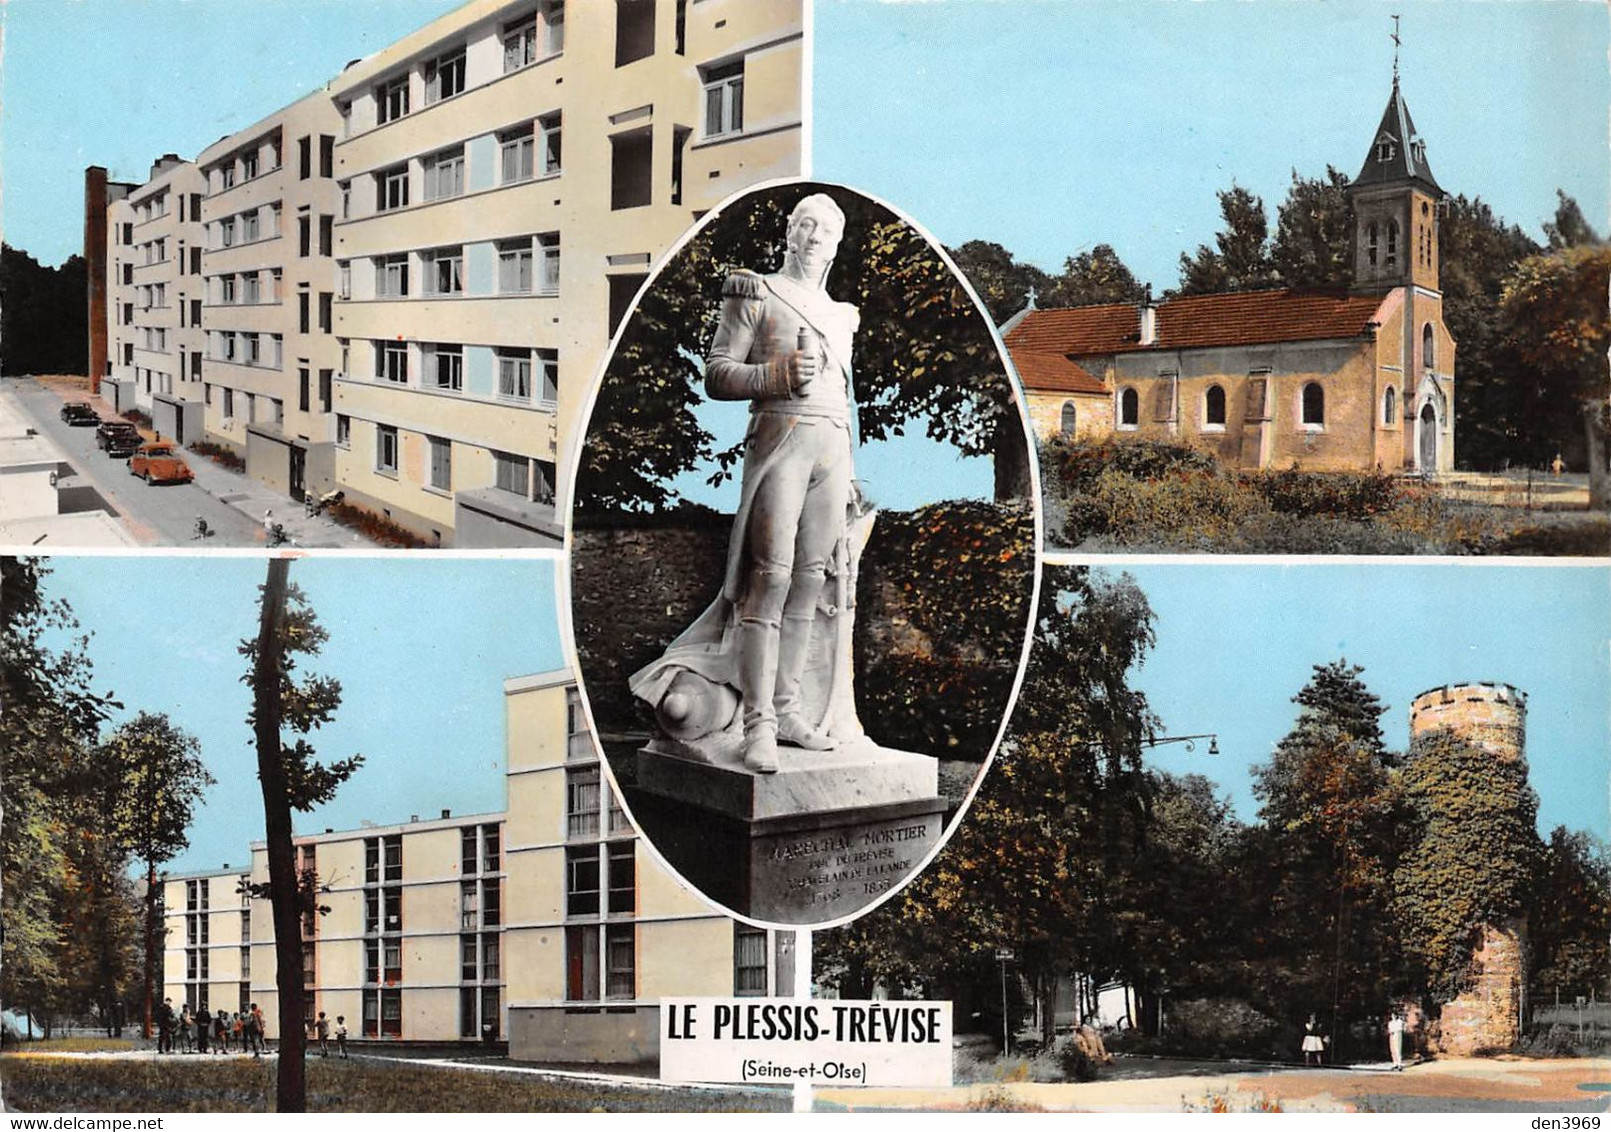 Le PLESSIS-TREVISE - Cité Charcot - Eglise Saint-Jean-Baptiste - Statue Maréchal Mortier - Groupe Ardouin - Tour Pentray - Le Plessis Trevise